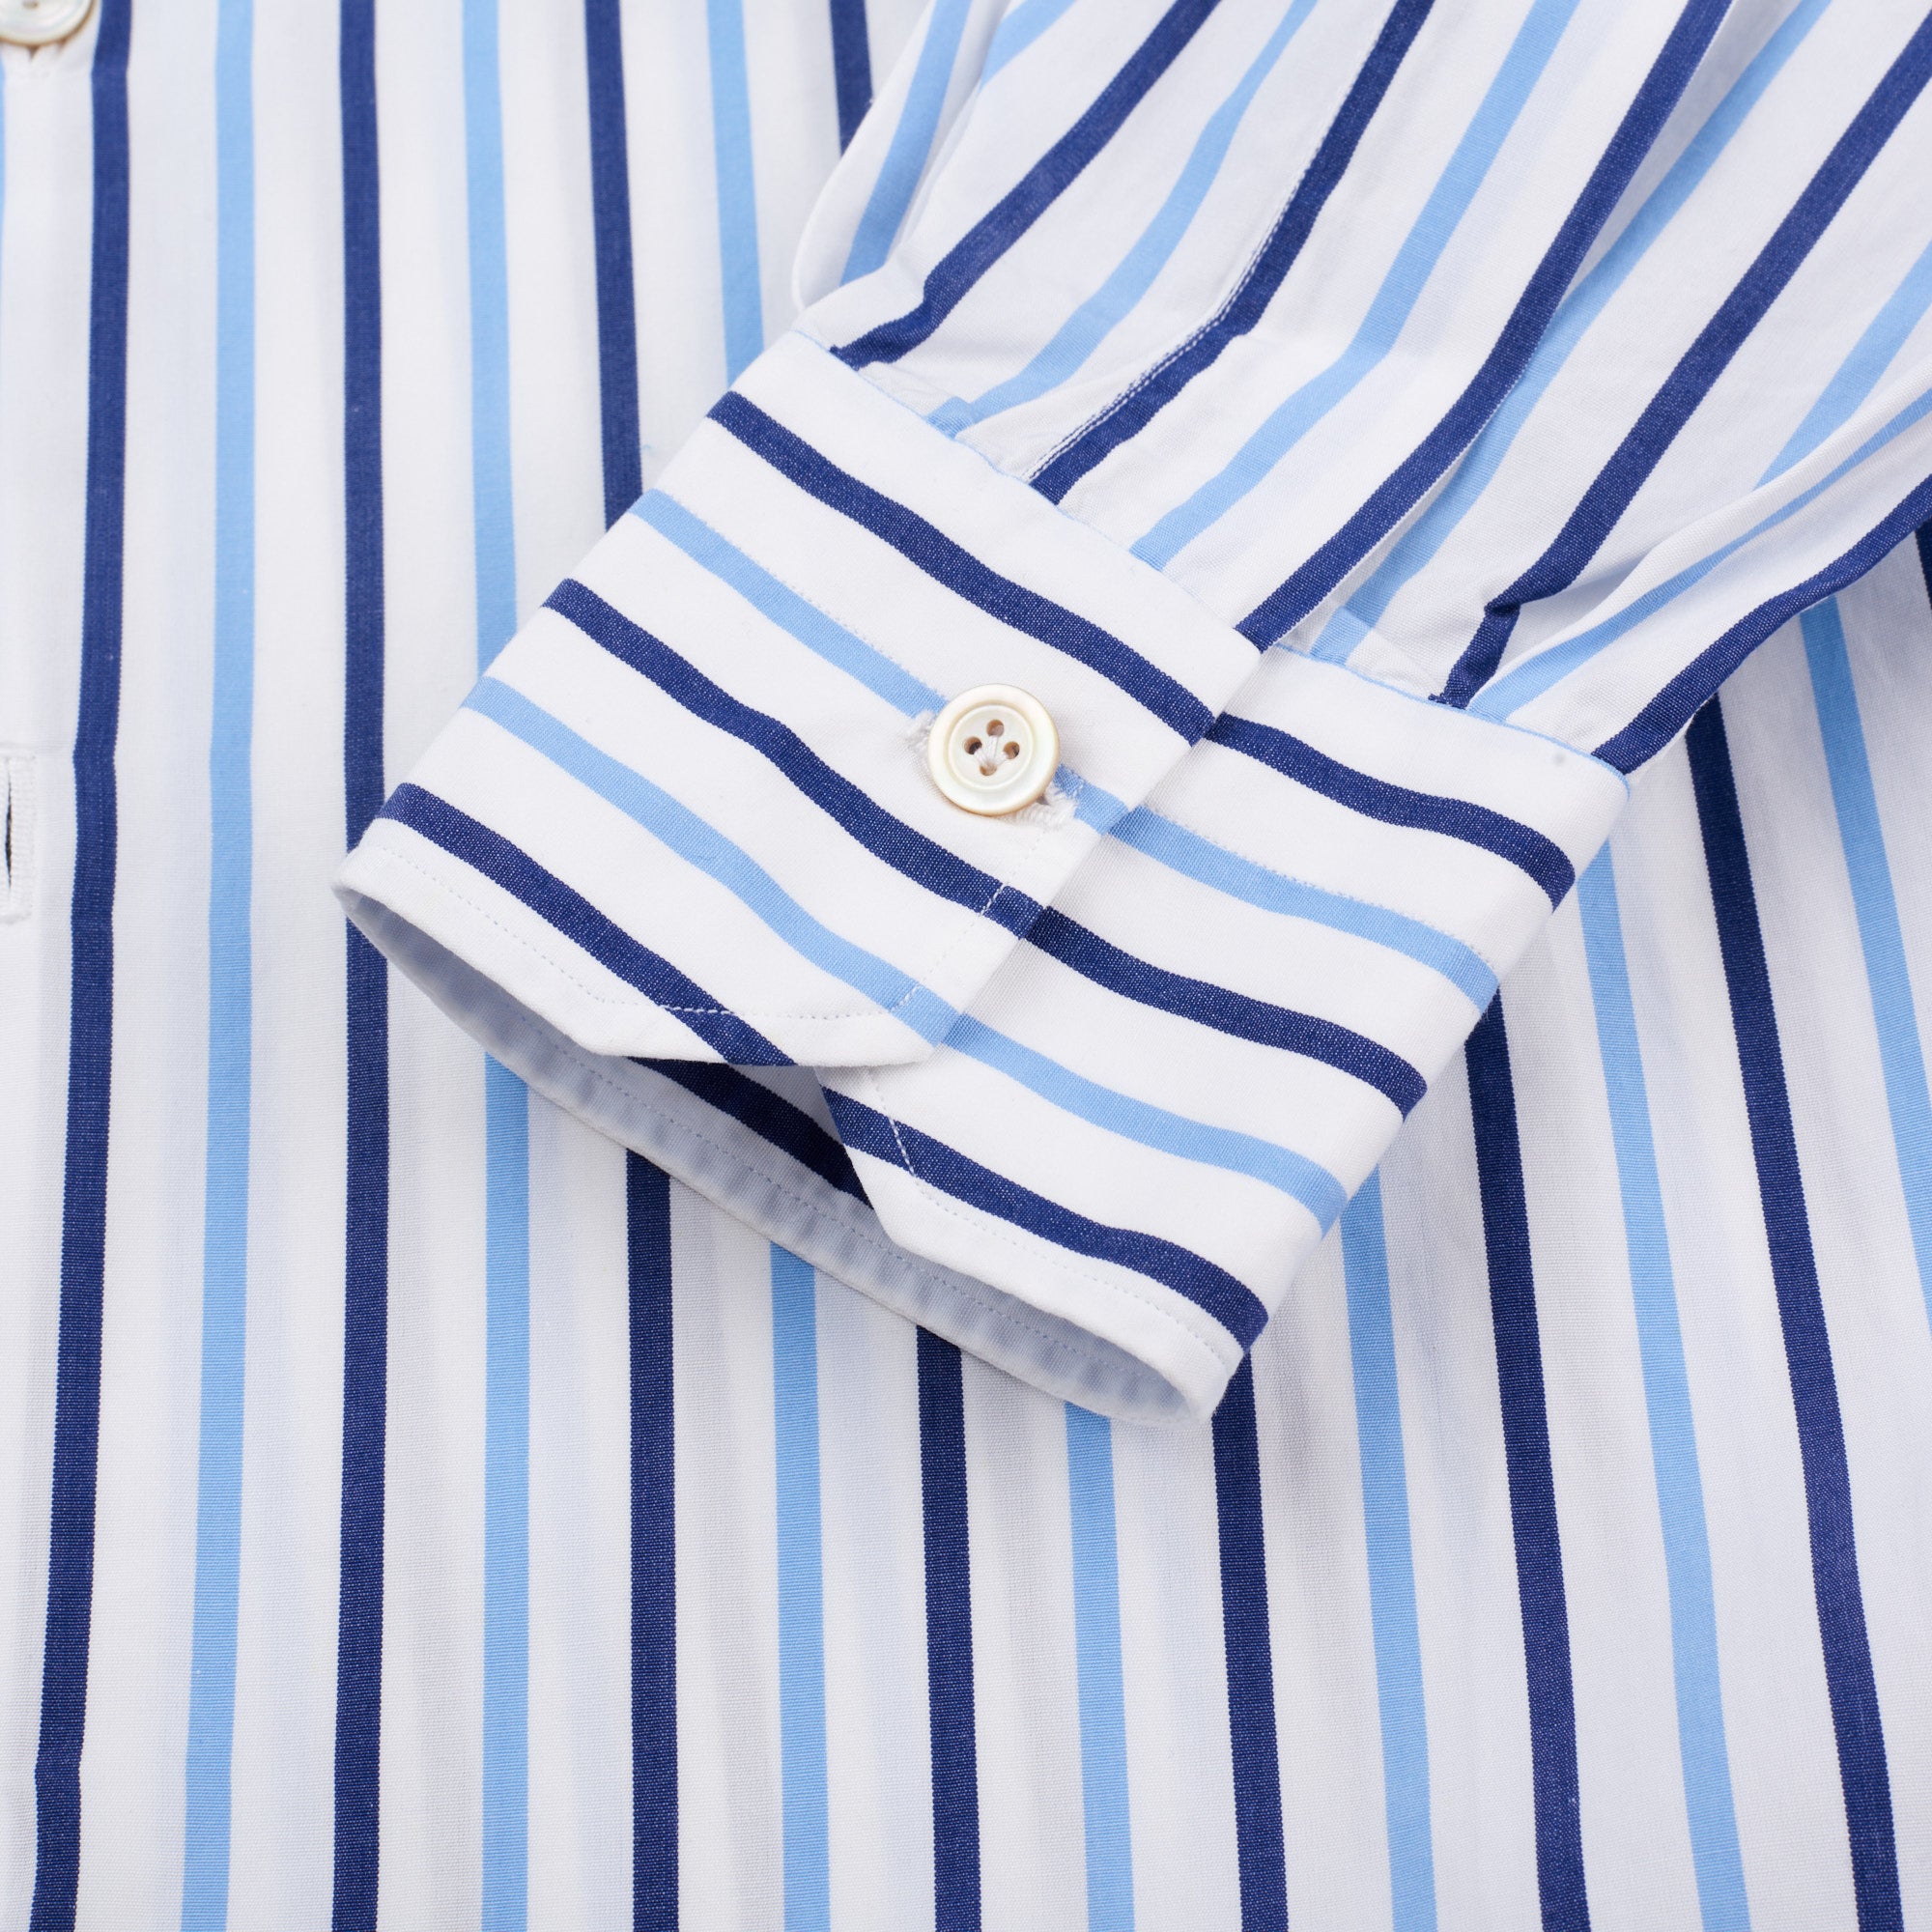 KITON Napoli Handmade Blue Striped Cotton Button-Down Dress Shirt EU 39 NEW US 15.5 KITON